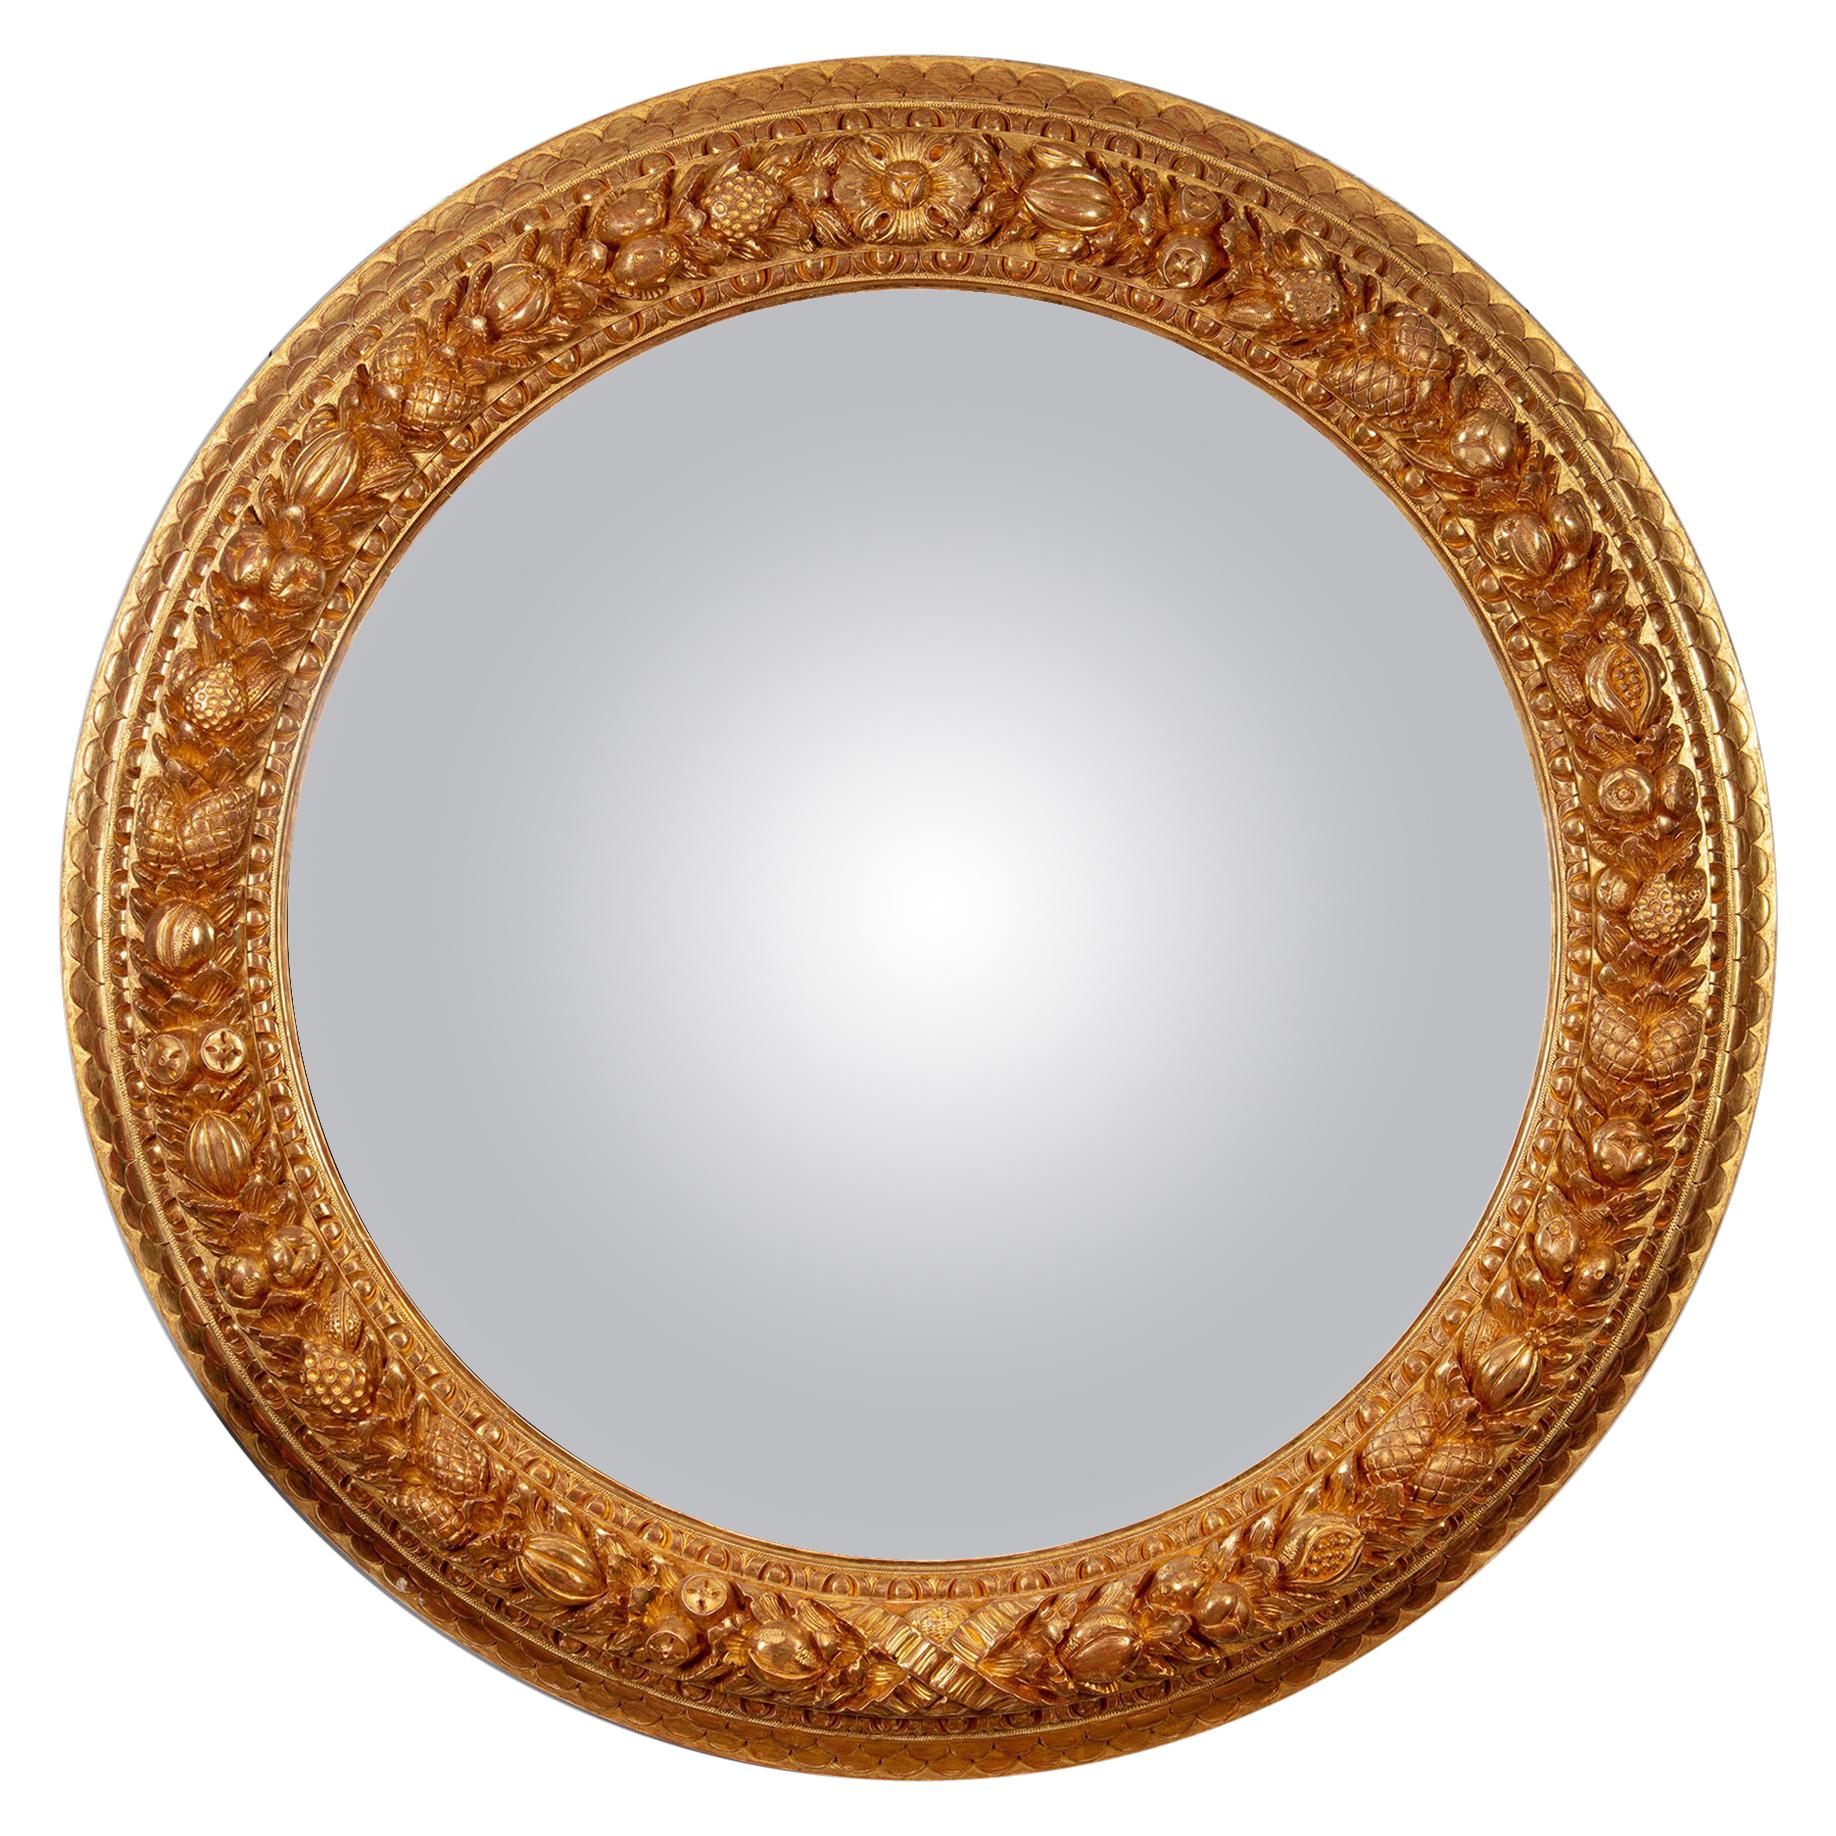 Grand miroir convexe italien à l'échelle monumentale